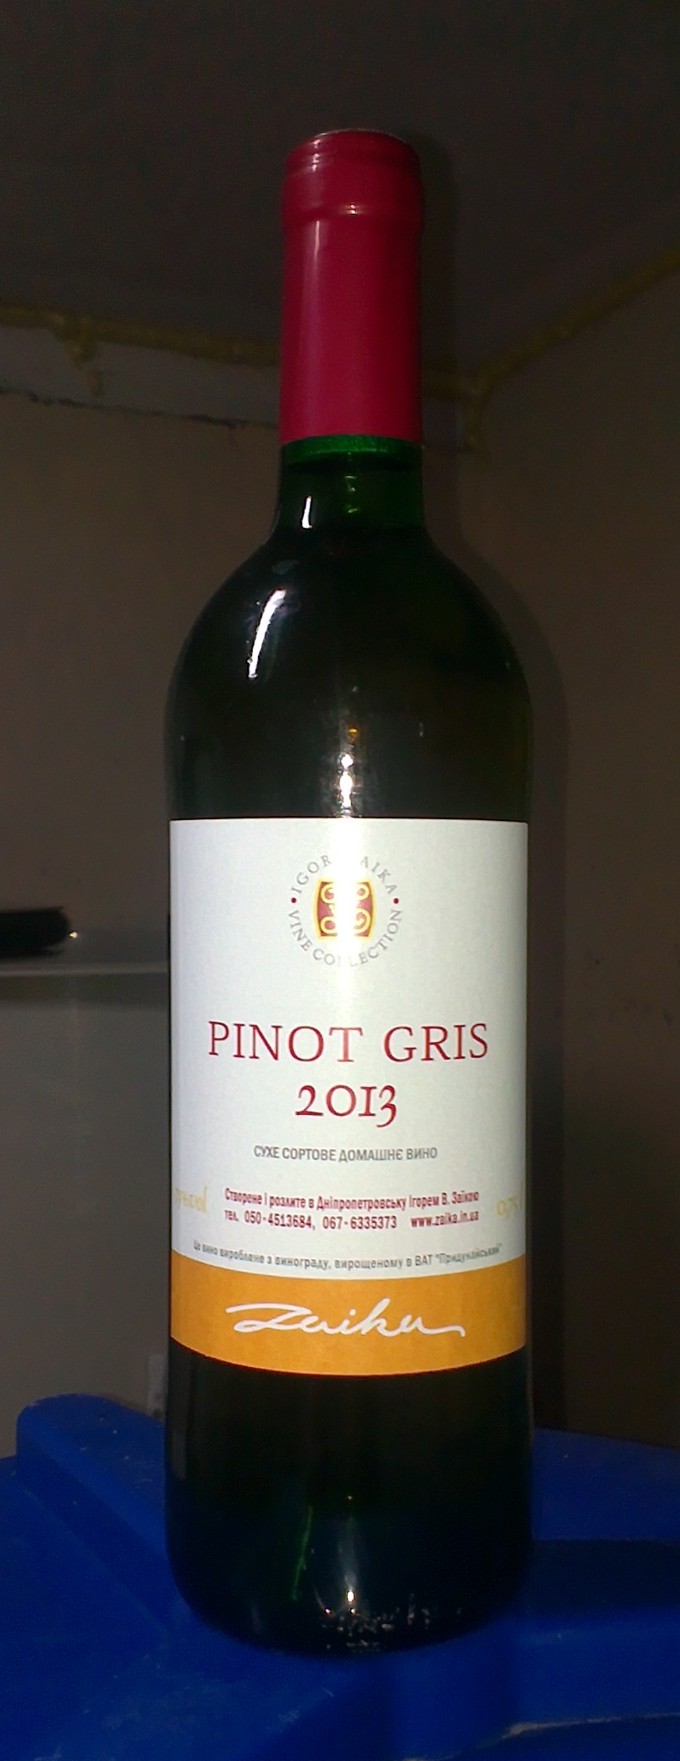 Pinot gris 2013